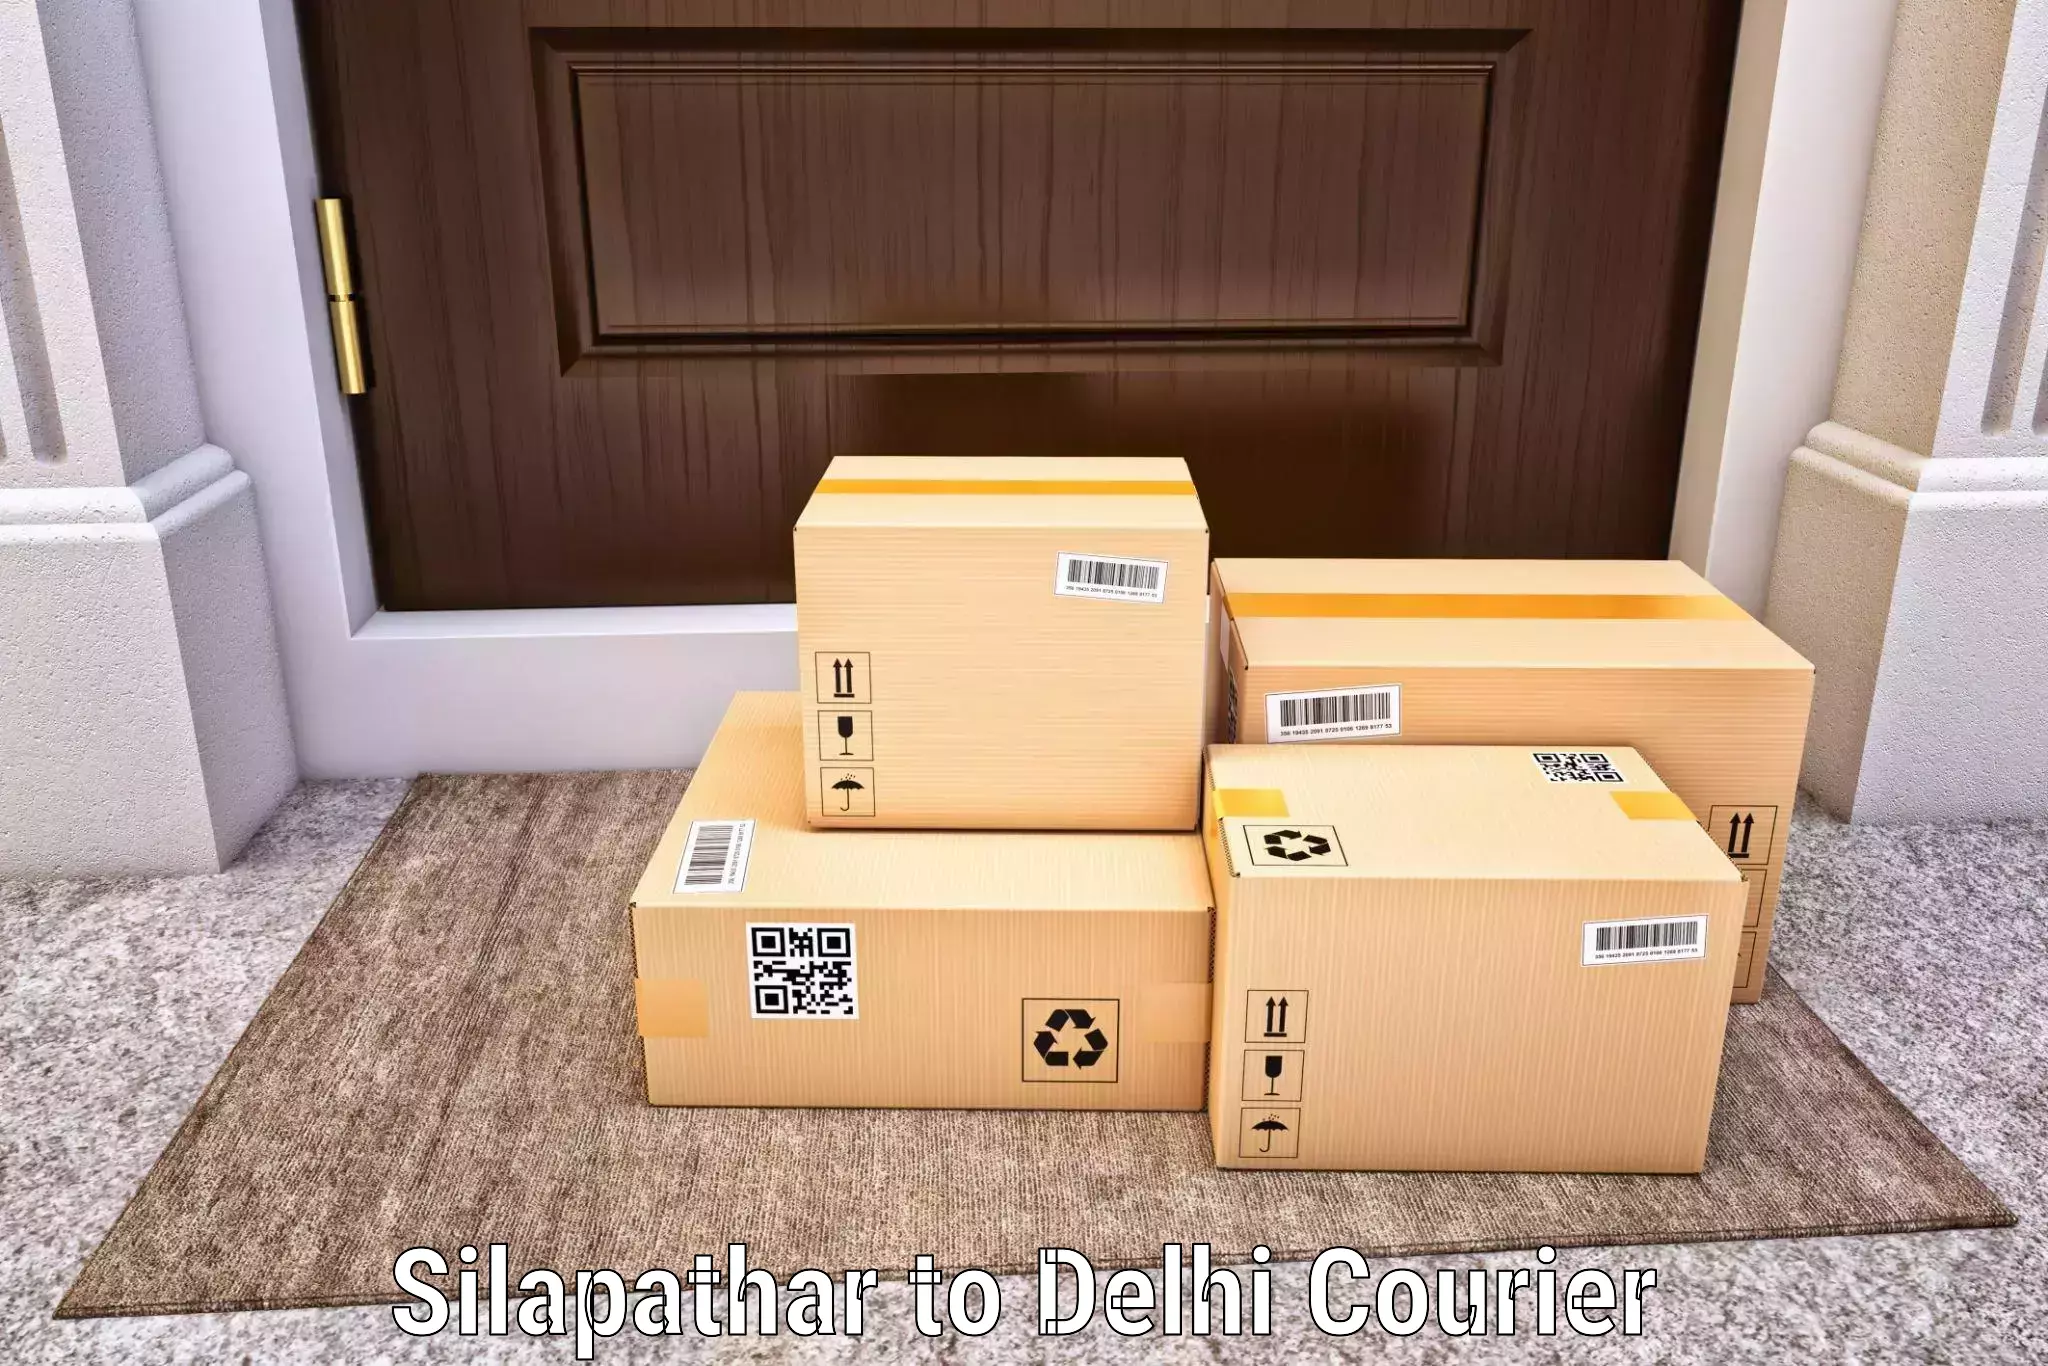 24-hour courier service Silapathar to Kalkaji